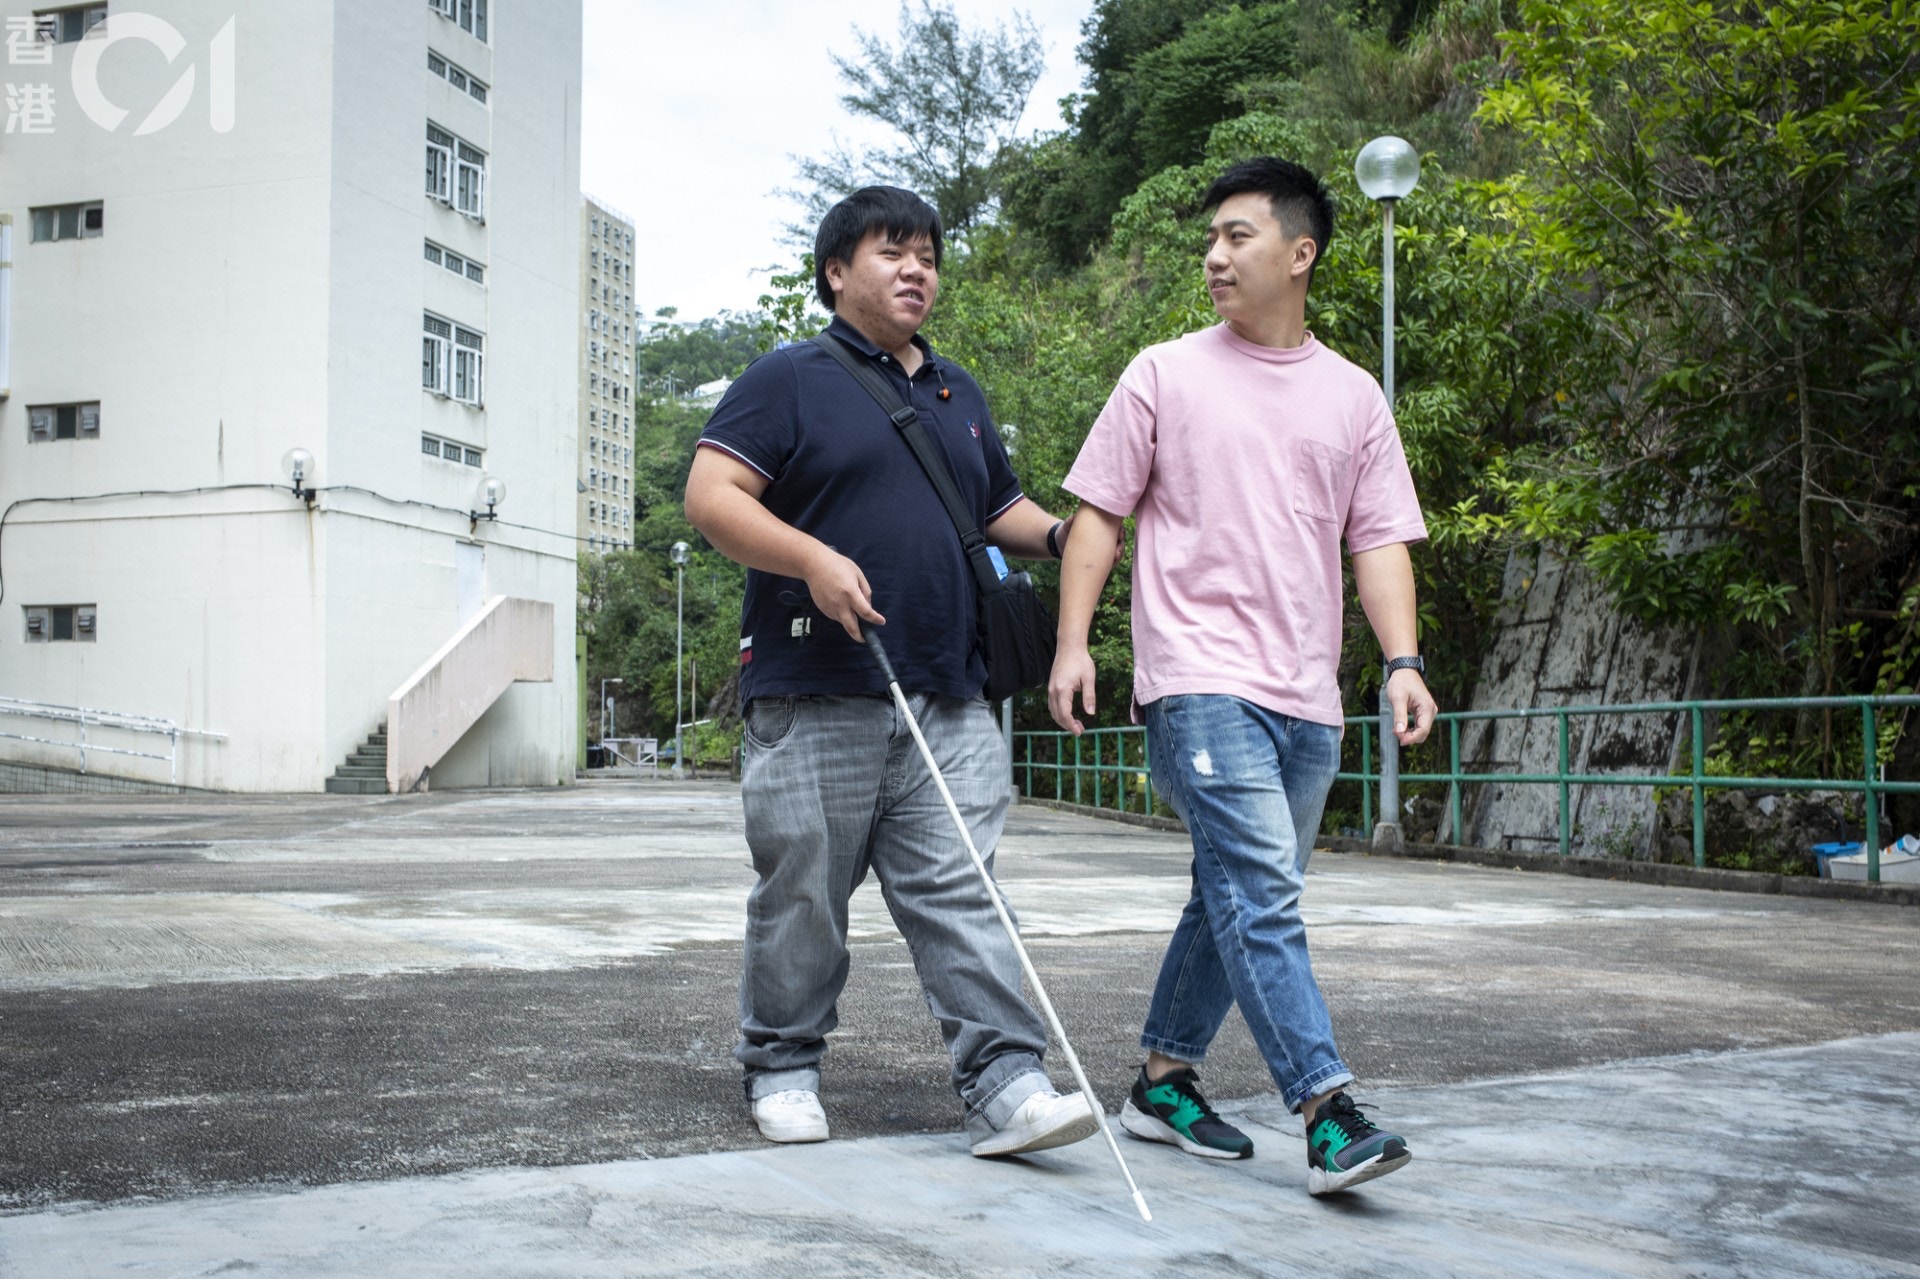 青年難受突然失明打擊想輕生哥哥猶如盲公竹帶領 棄暗投明 香港01 社會新聞